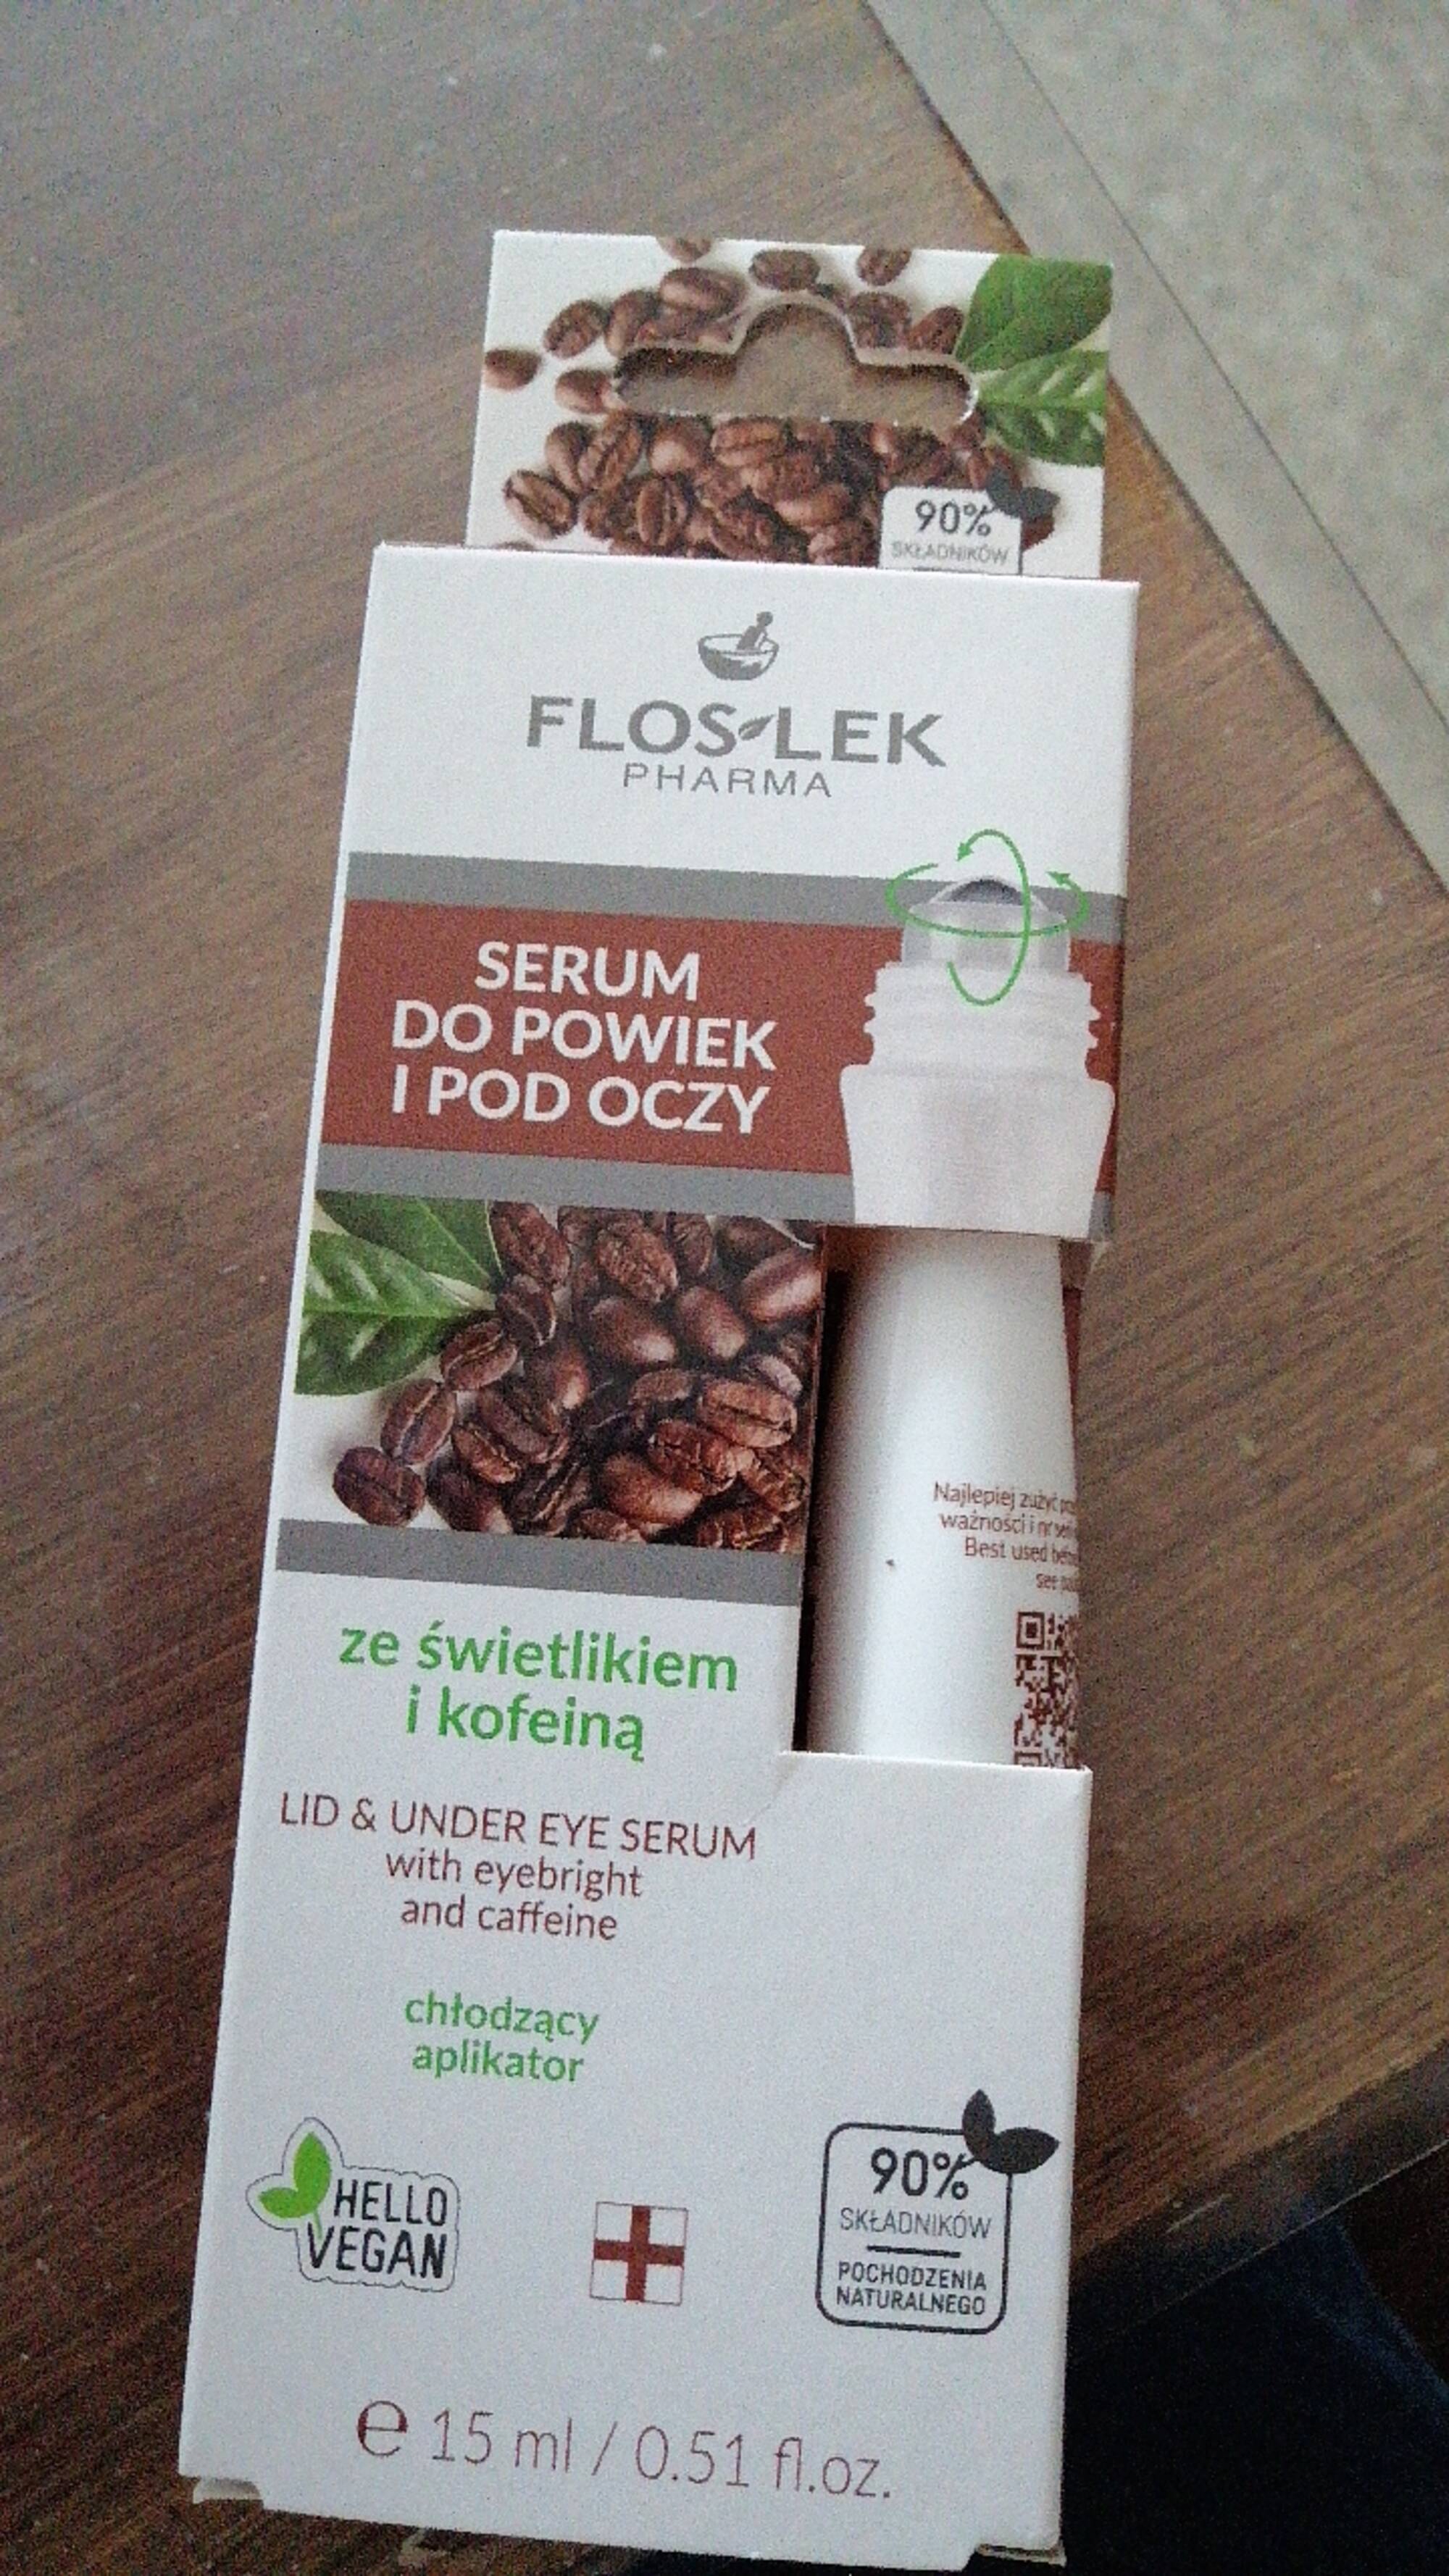 FLOSLEK - Serum lid & under eye serum